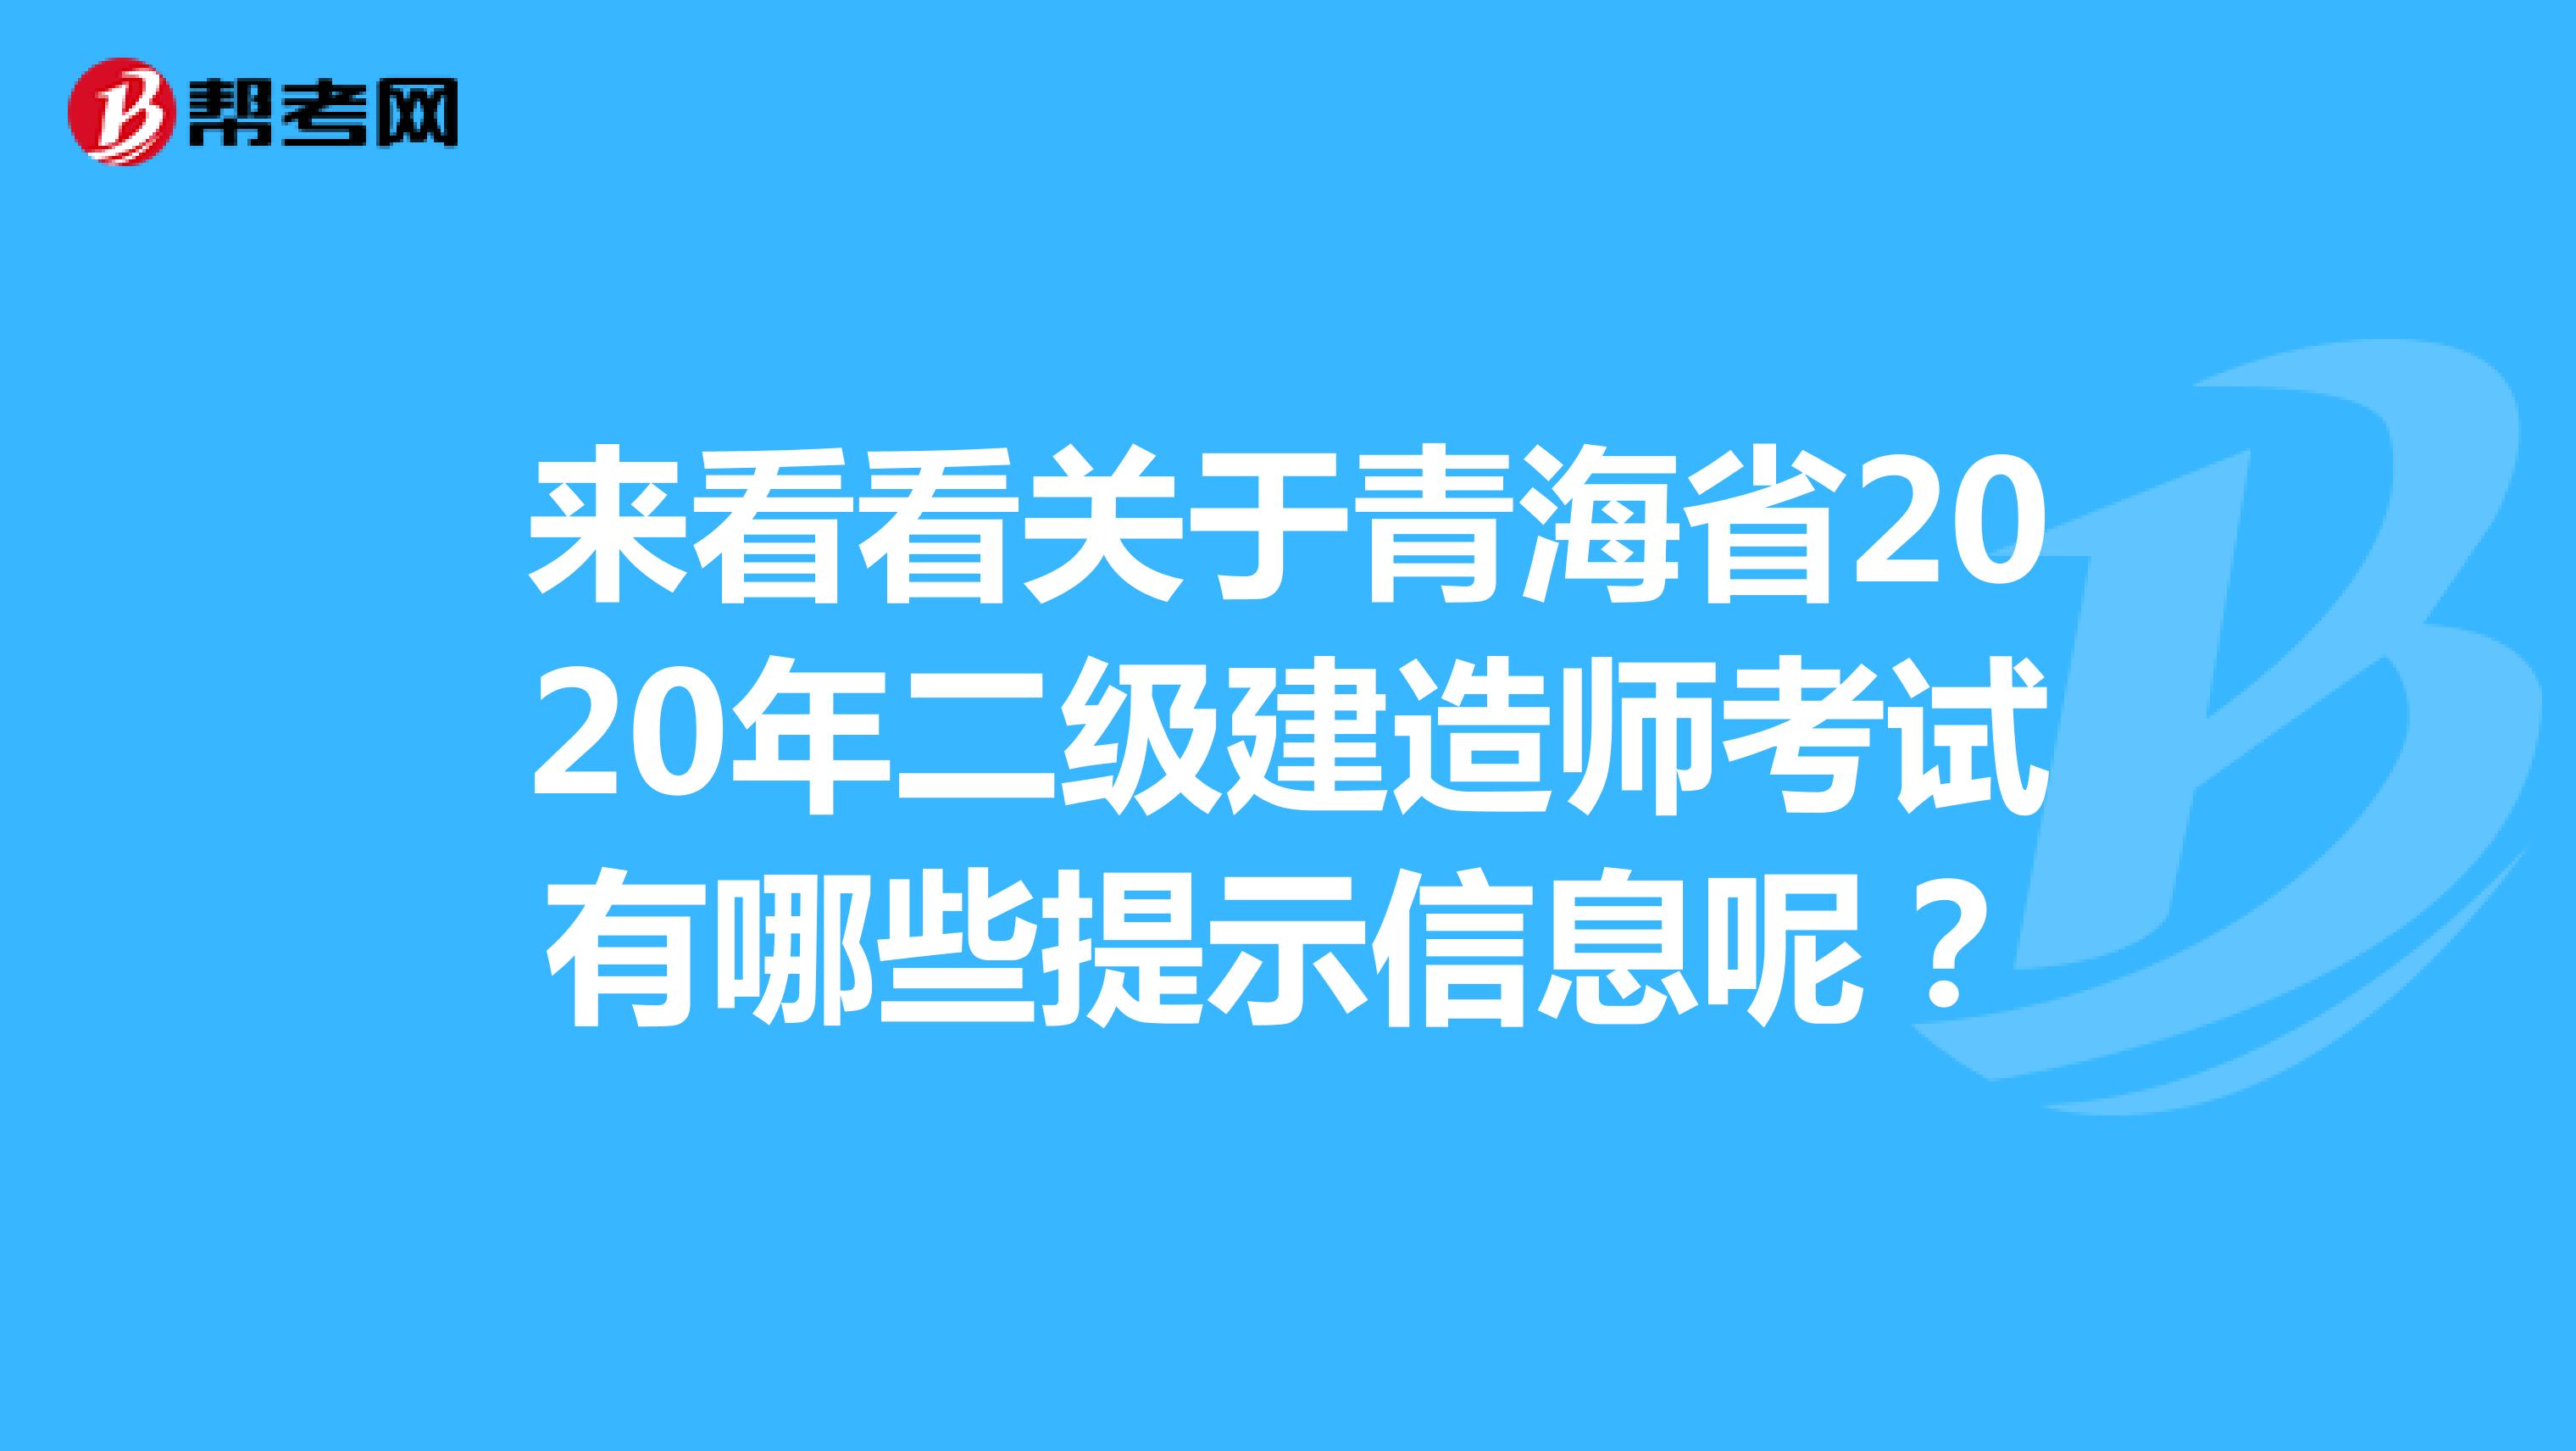 来看看关于青海省2020年二级建造师考试有哪些提示信息呢？